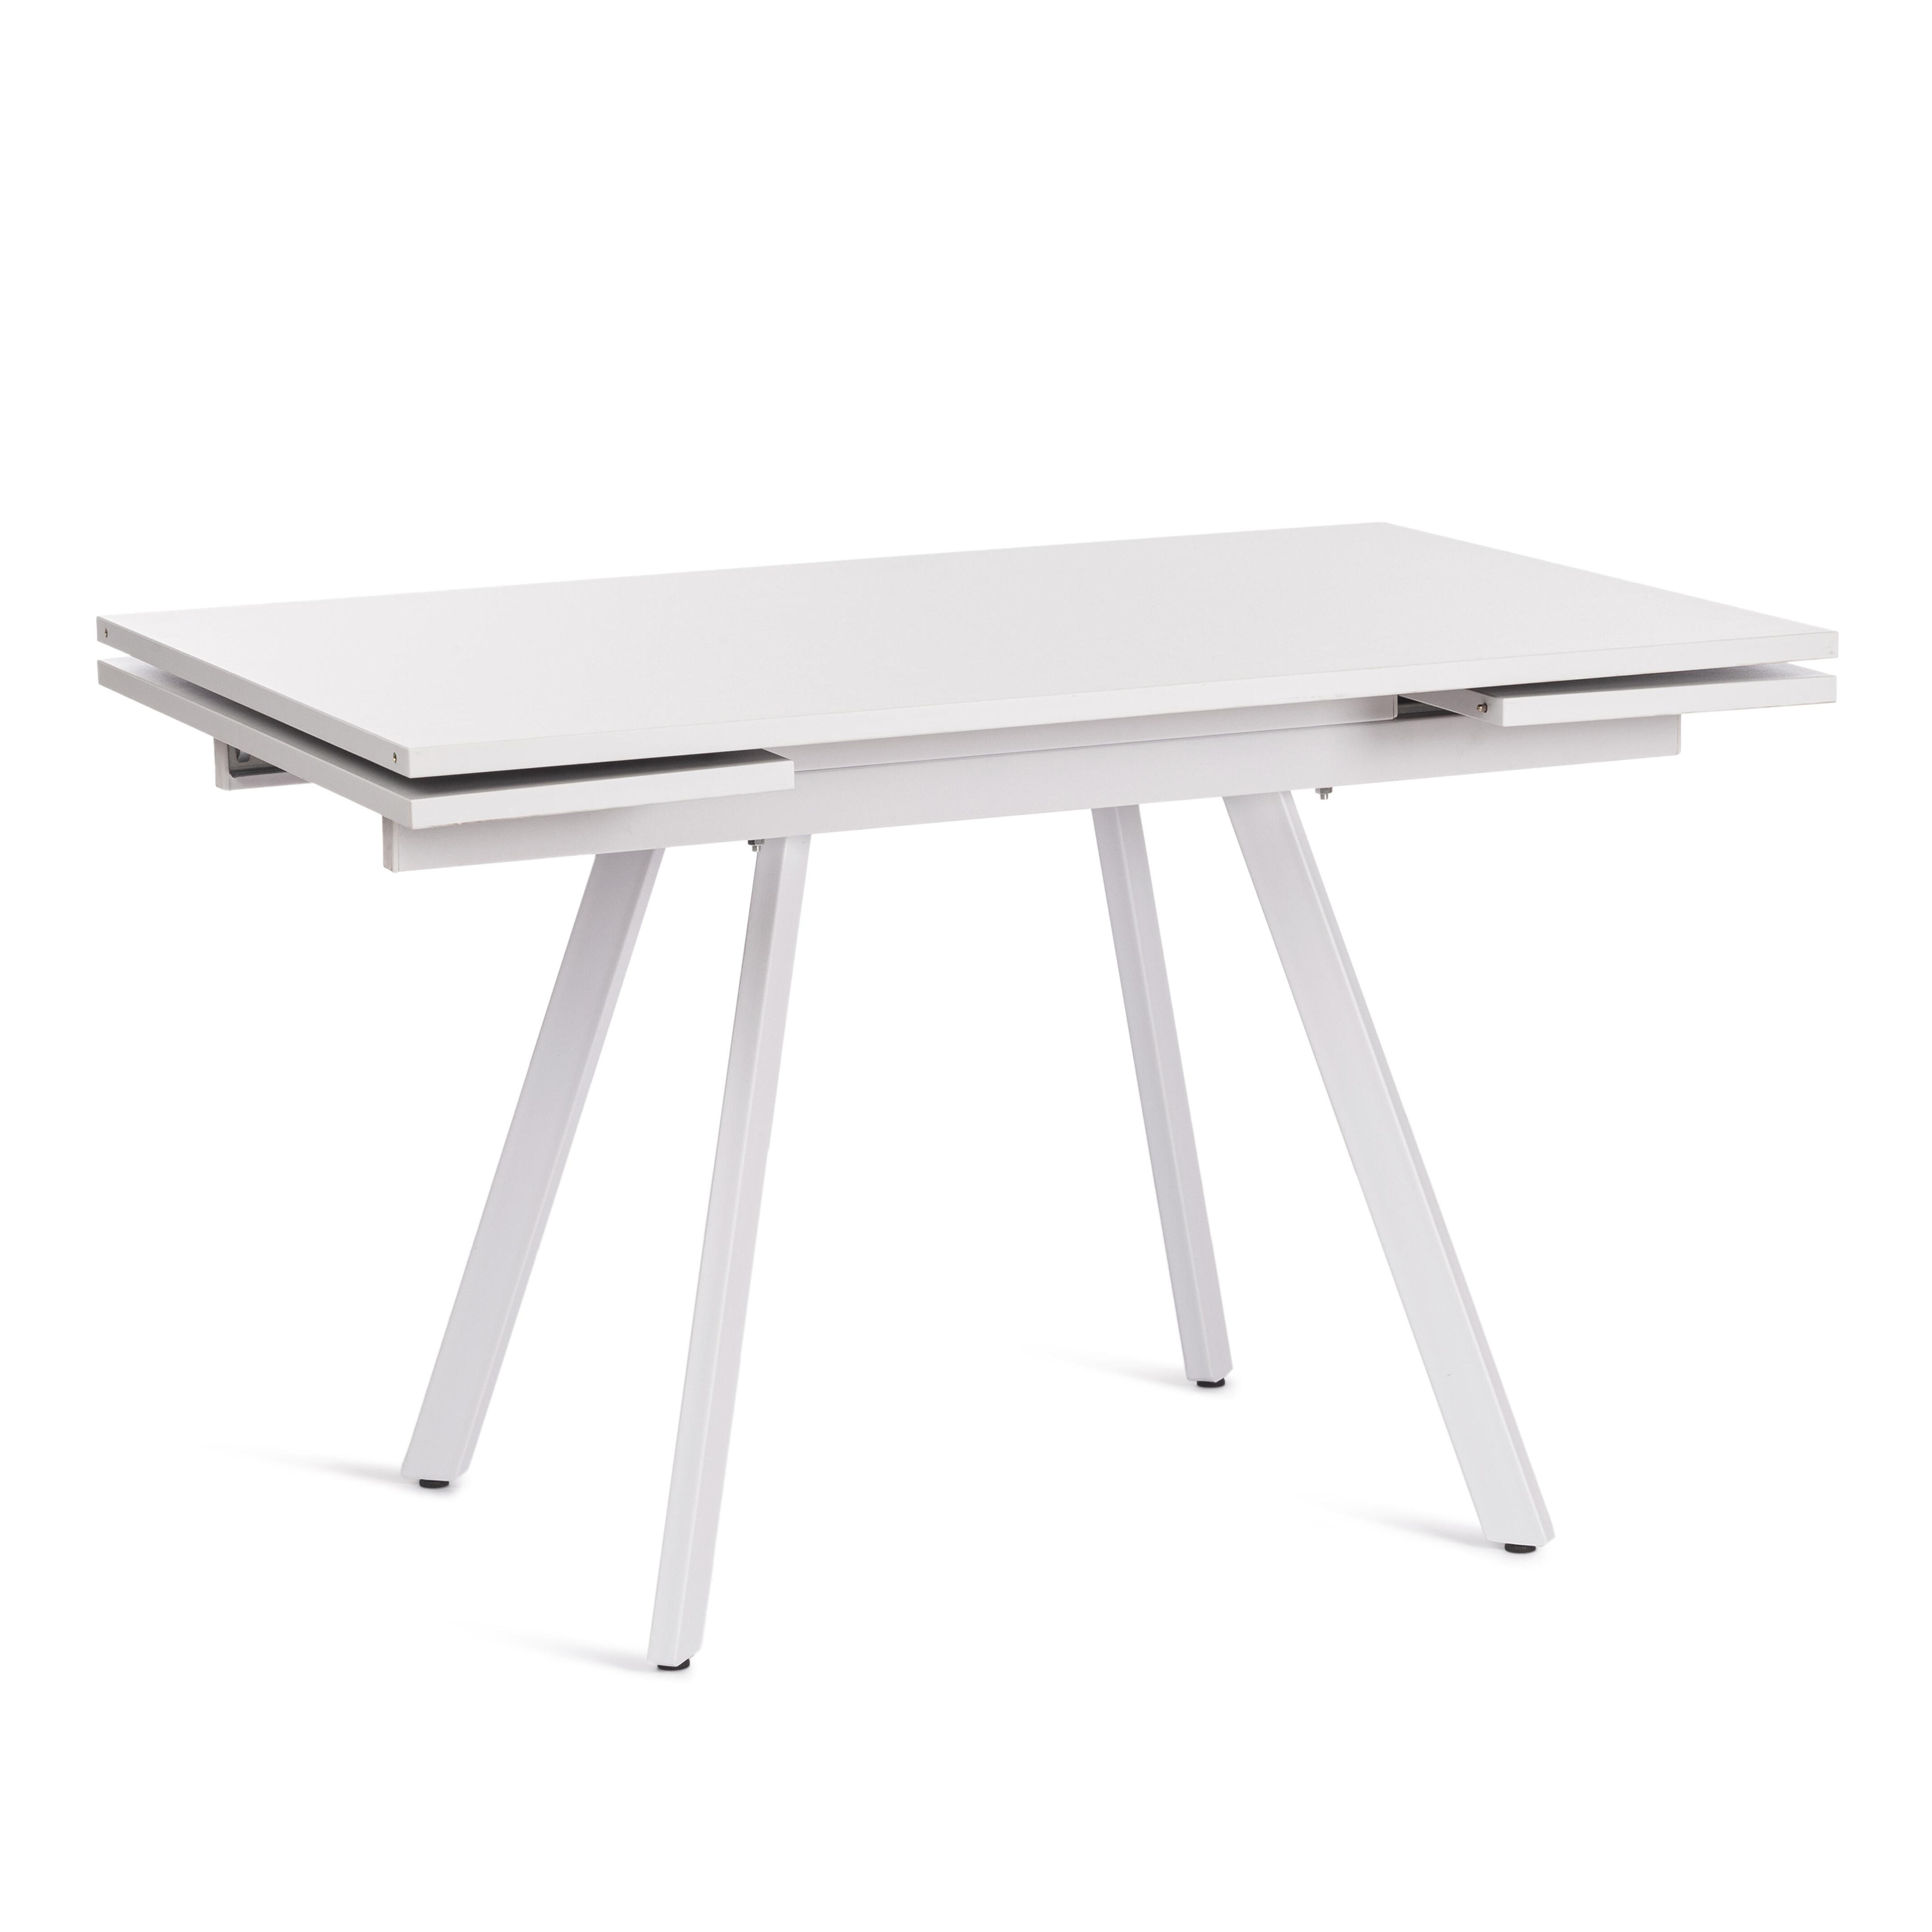 91000028 Обеденный стол прямоугольный vigo 120-180x80 см ЛДСП цвет белый MODERN STLM-0432790 TETCHAIR